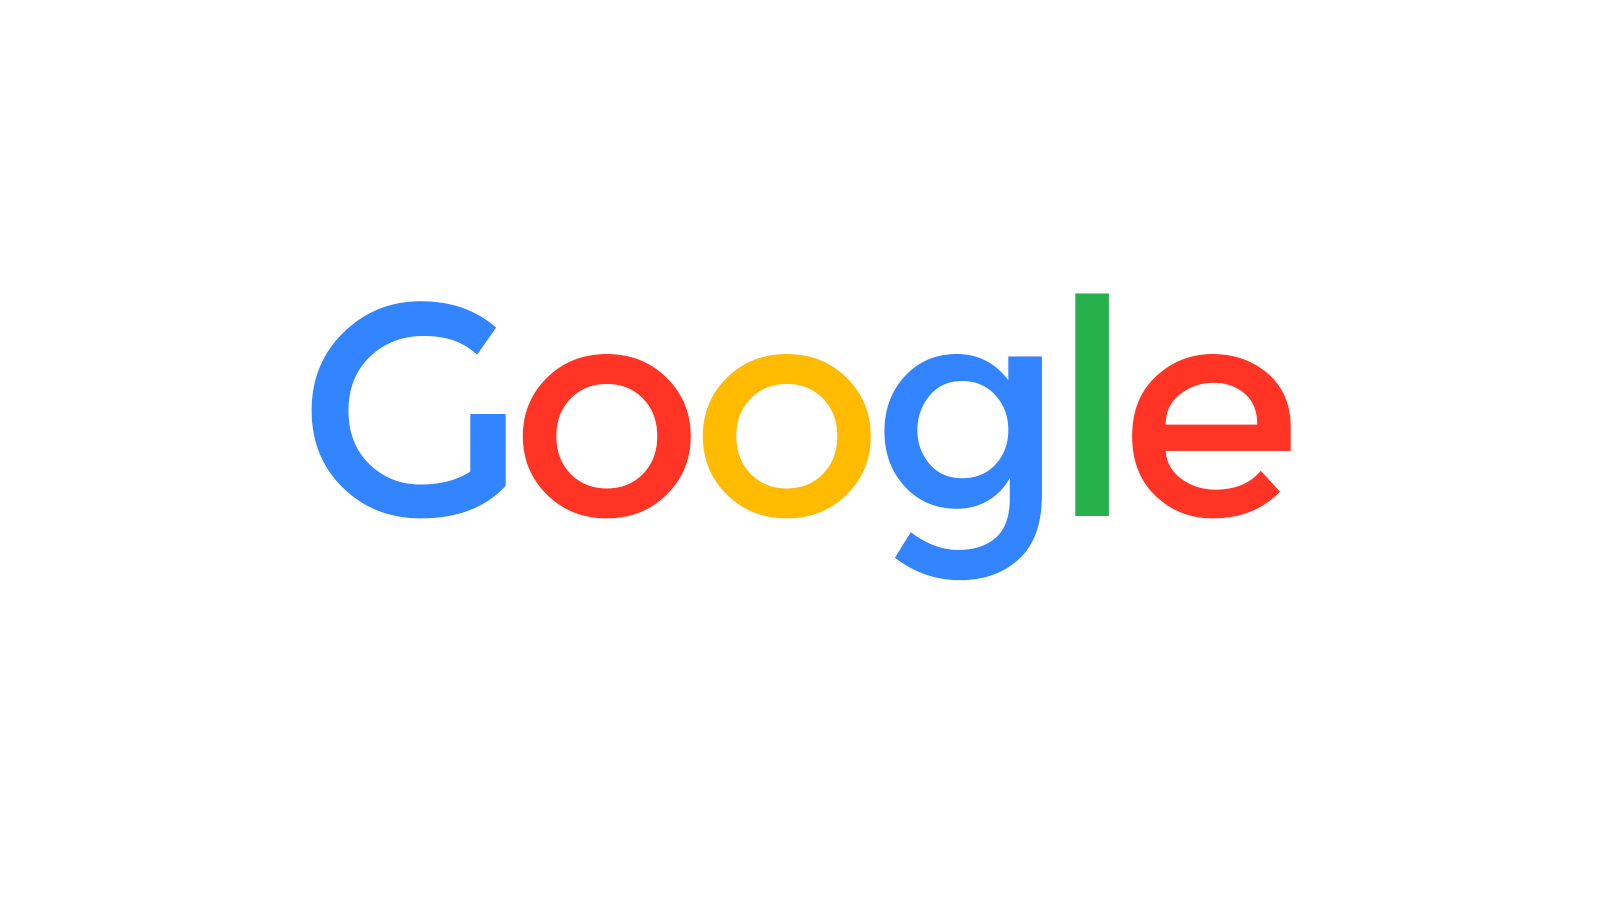 Google เผชิญการสอบสวนต่อต้านการผูกขาดในญี่ปุ่น